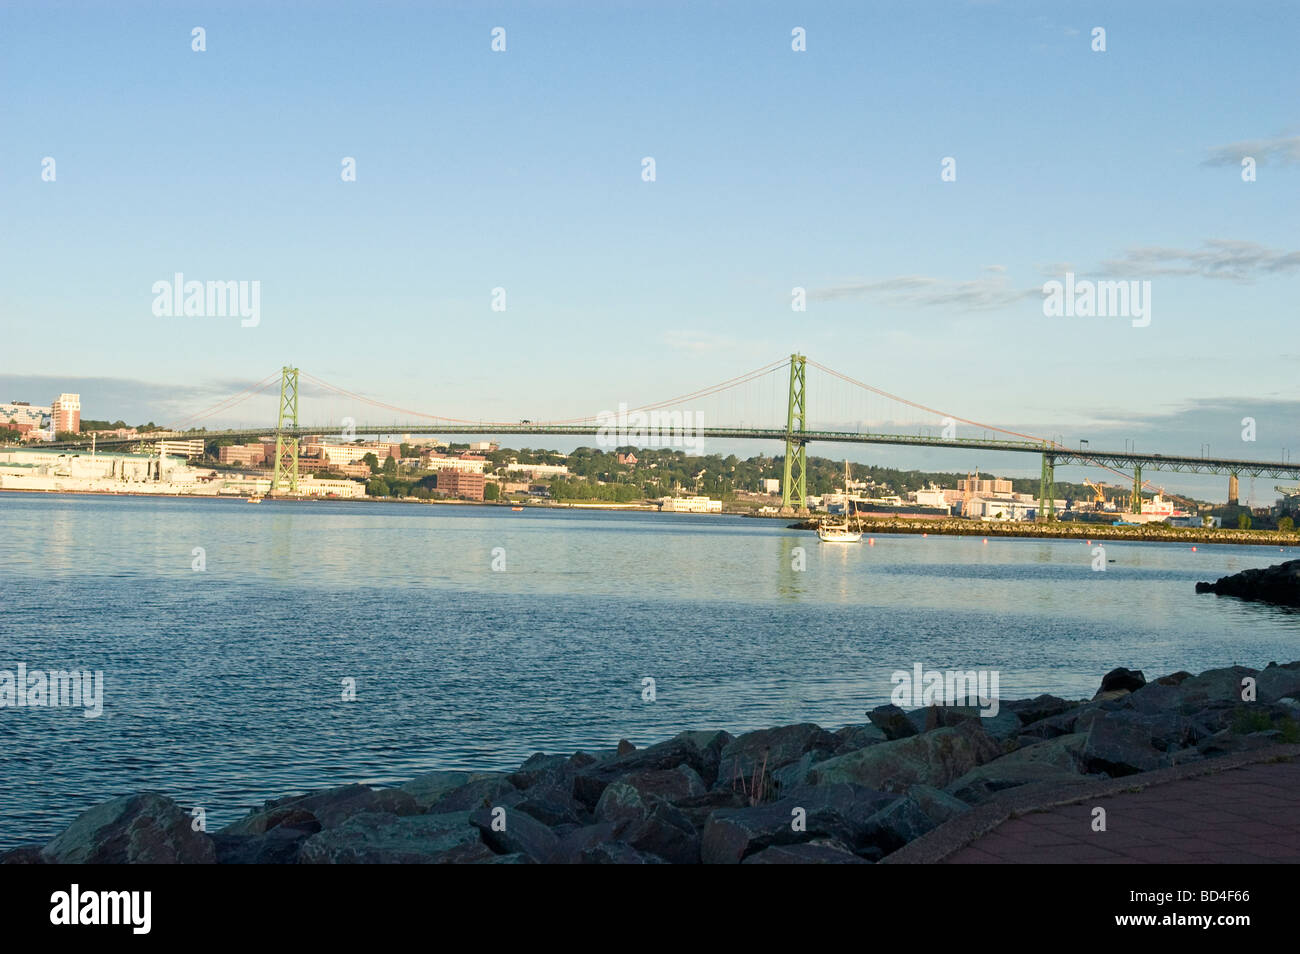 Angus L. Macdonald ponte che collega Halifax e Dartmouth, Nova Scotia, Canada Foto Stock